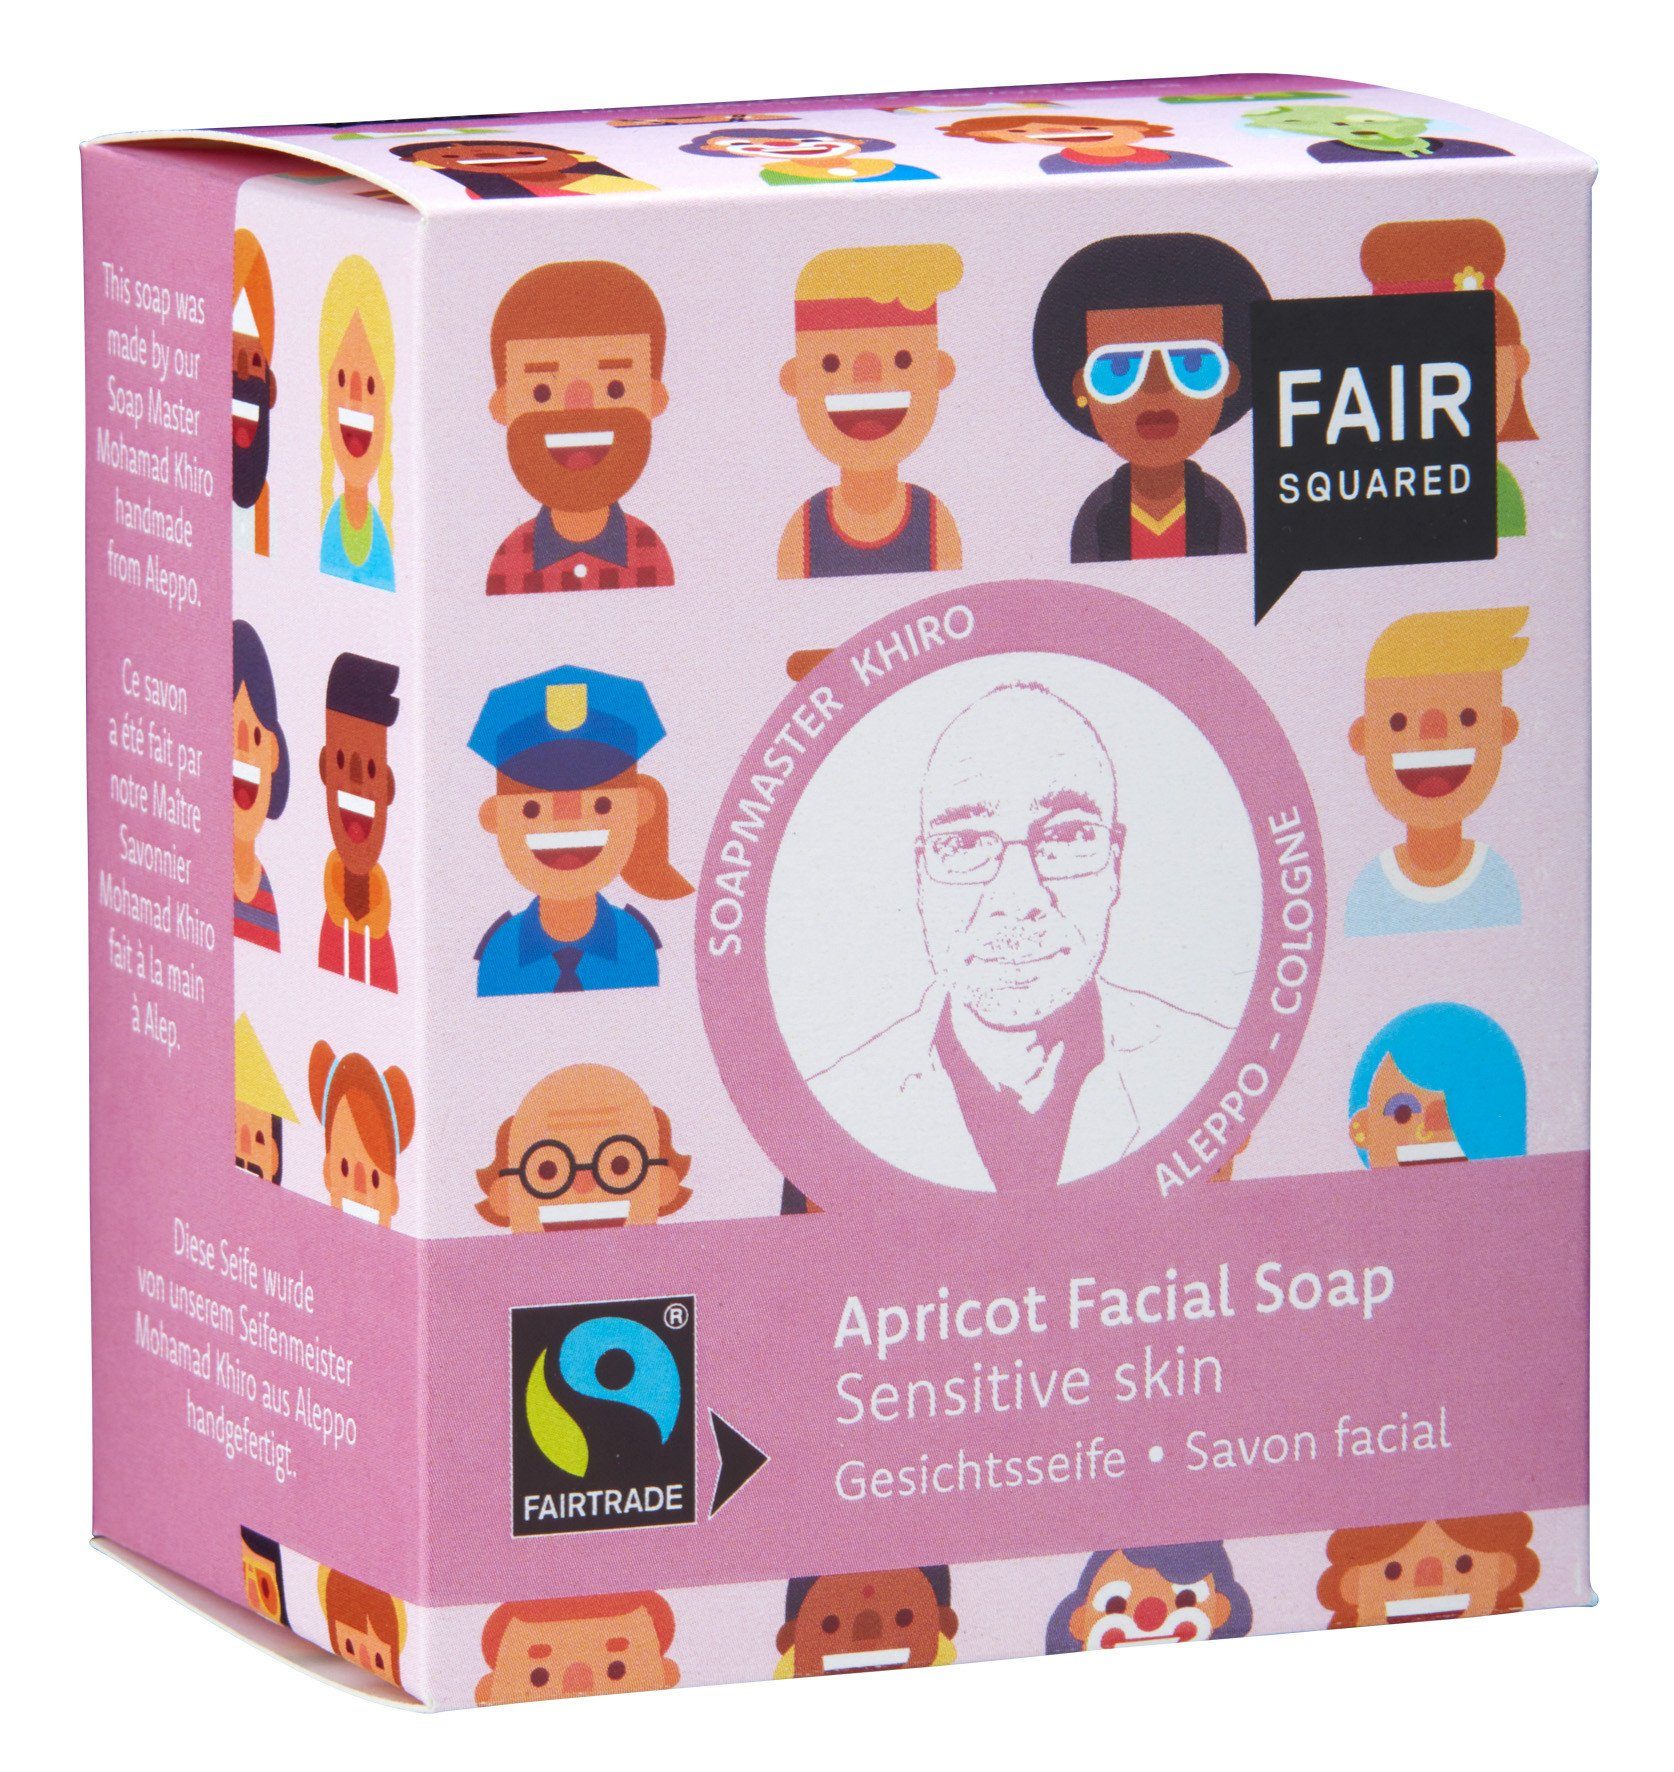 Fair Squared Gesichtsseife FAIR SQUARED Gesichtseife mit Aprikose für sensible Haut mit fair gehandelten Inhaltsstoffen, 1-tlg., Für sensible & trockene Haut | Gesichtsseifen